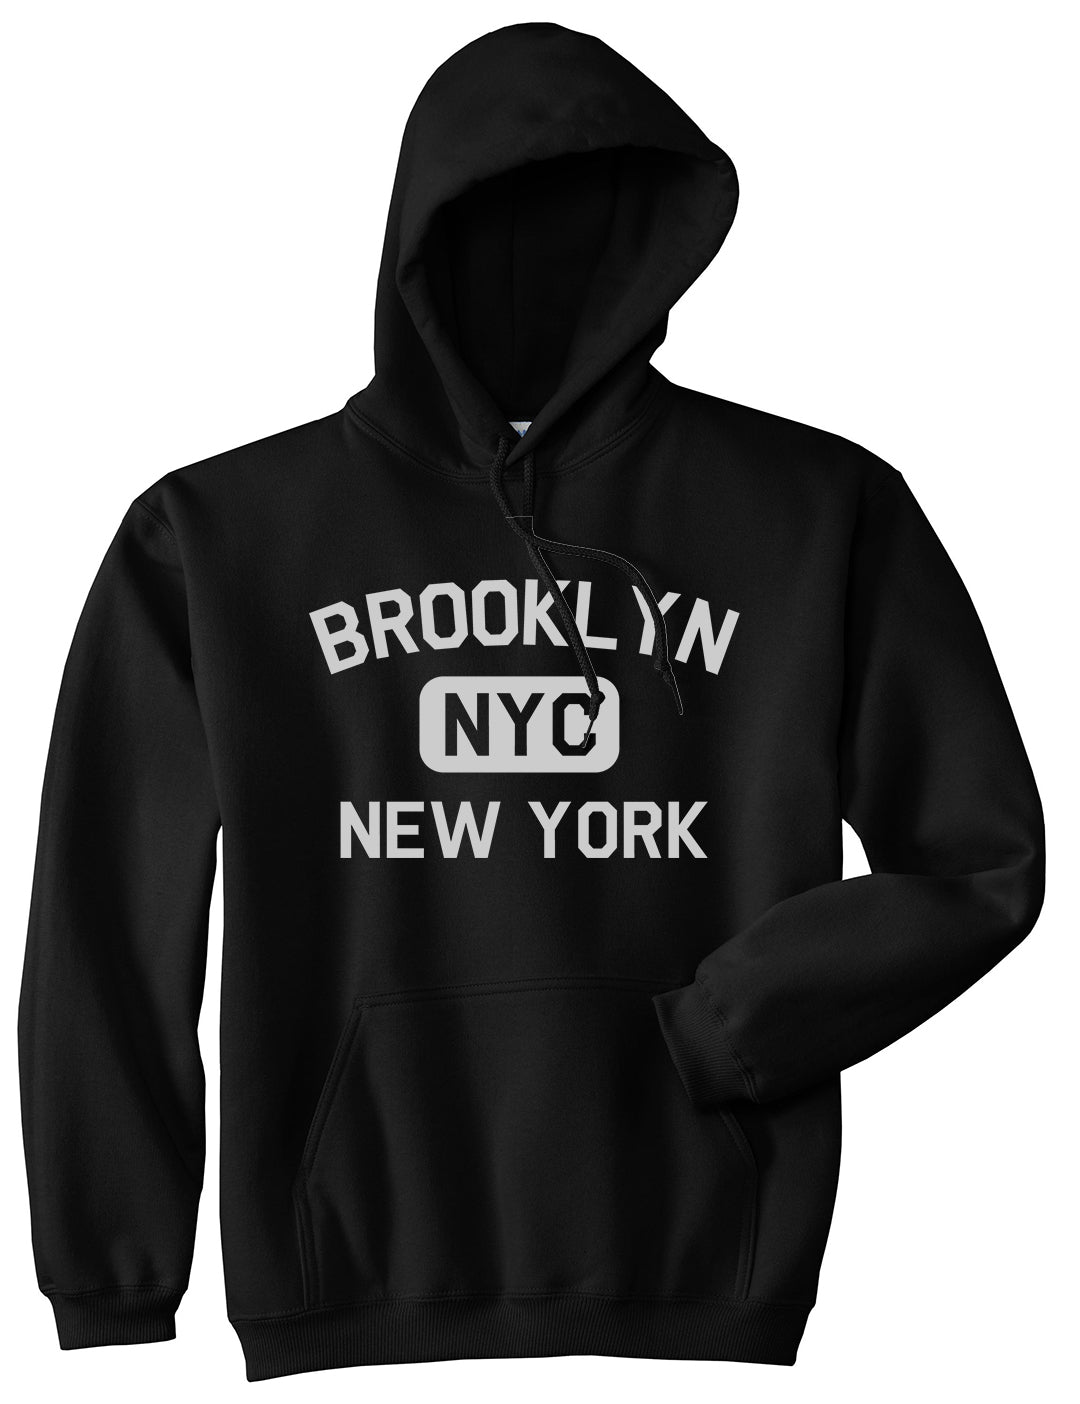 Brooklyn Gym NYC New York Mens Pullover Hoodie Black